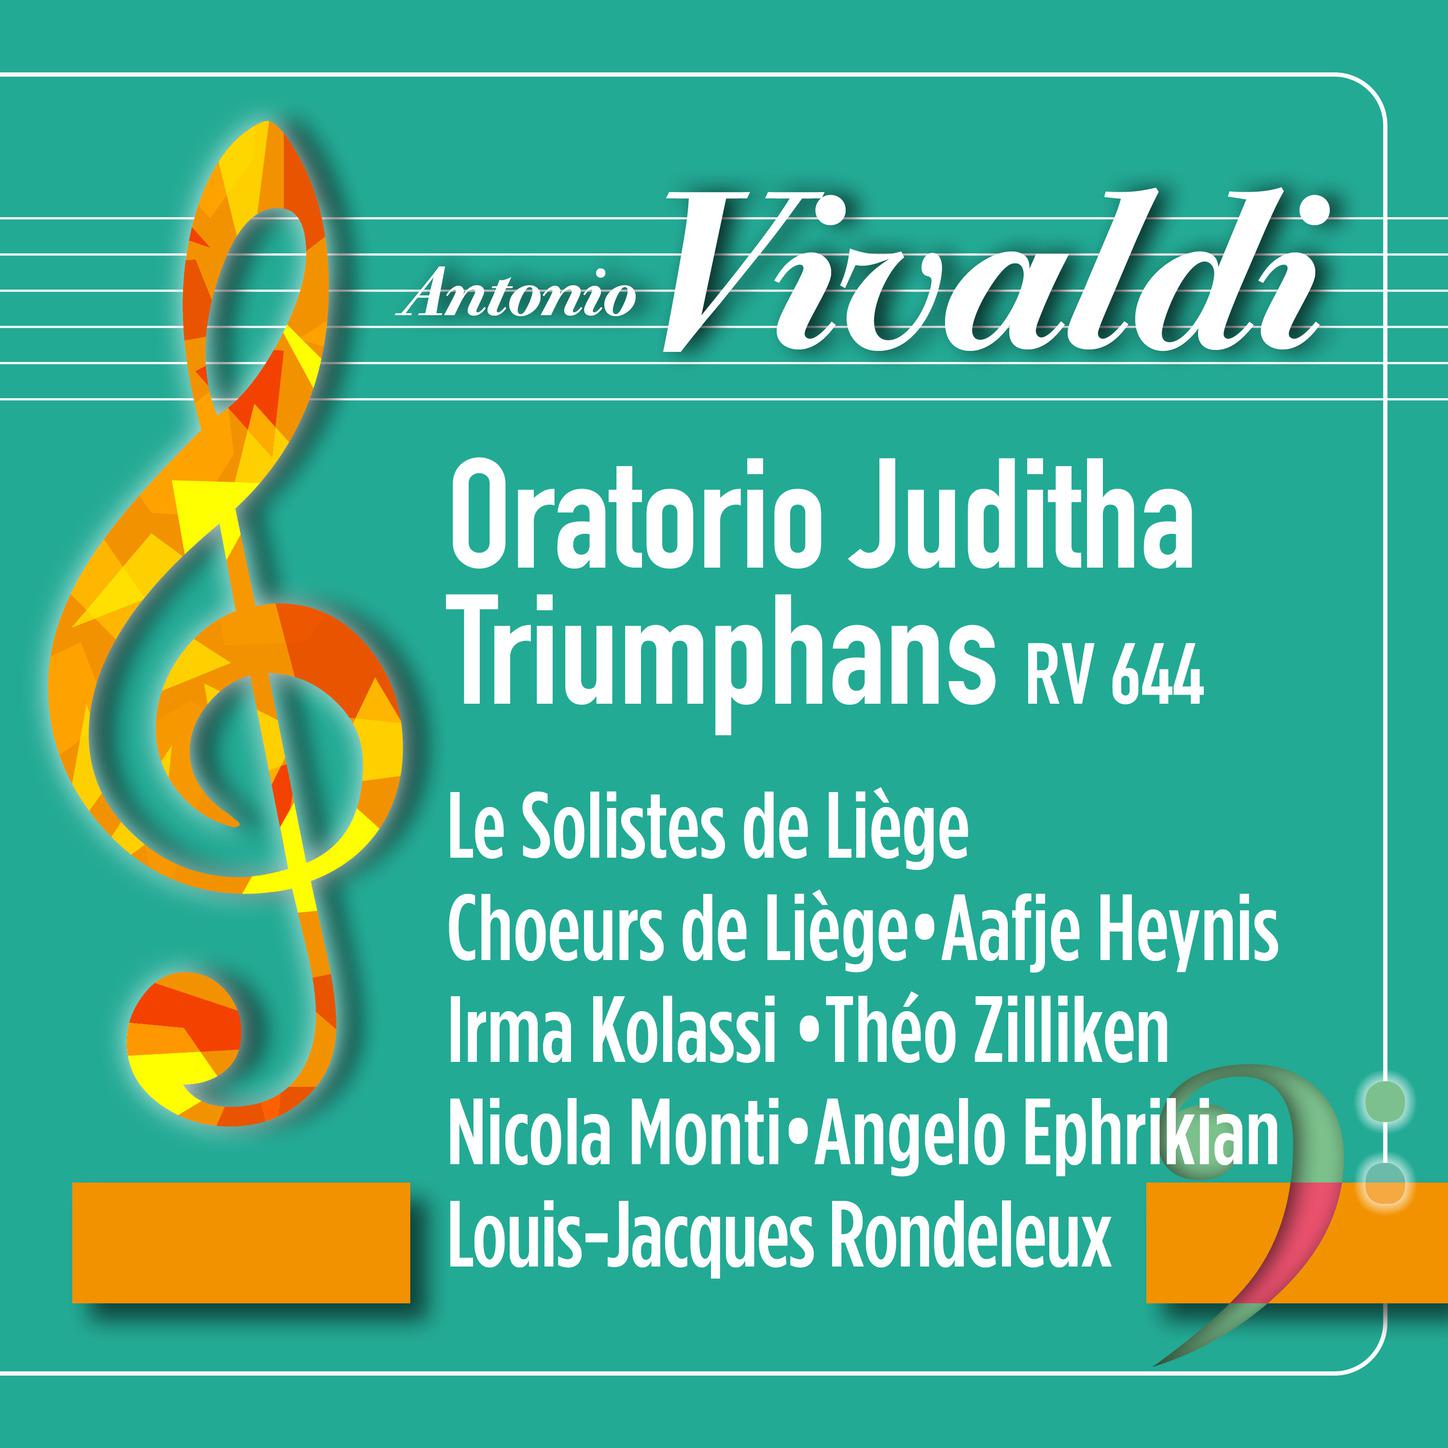 Le Solistes de Liège - Vivaldi: Juditha Triumphans, RV 644: Recitativo. Sic in pace inter hostes - Aria. Umbrae carae, aurae adoratae